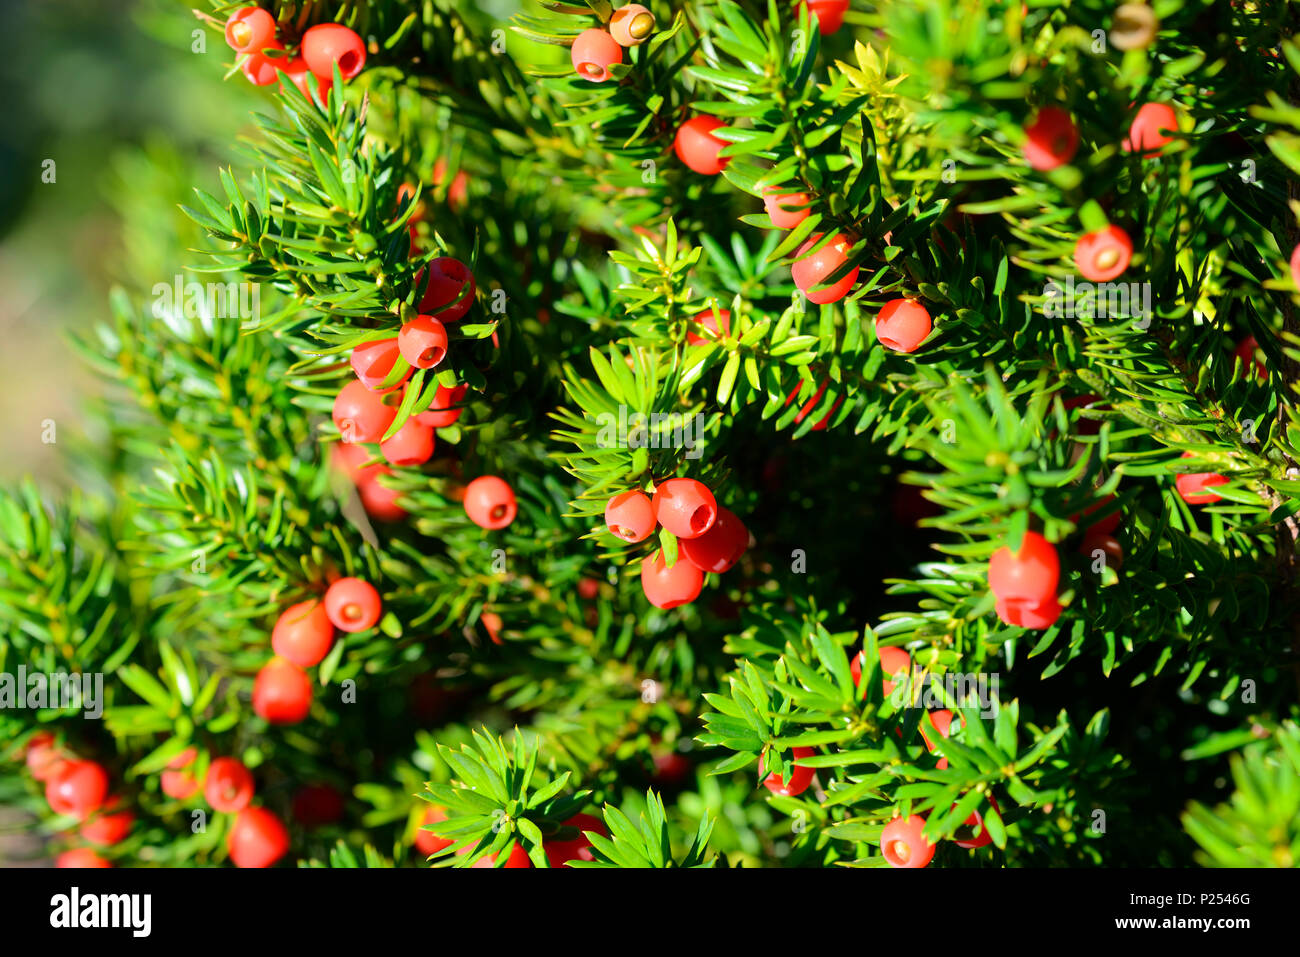 European yew, Taxus baccata Stock Photo